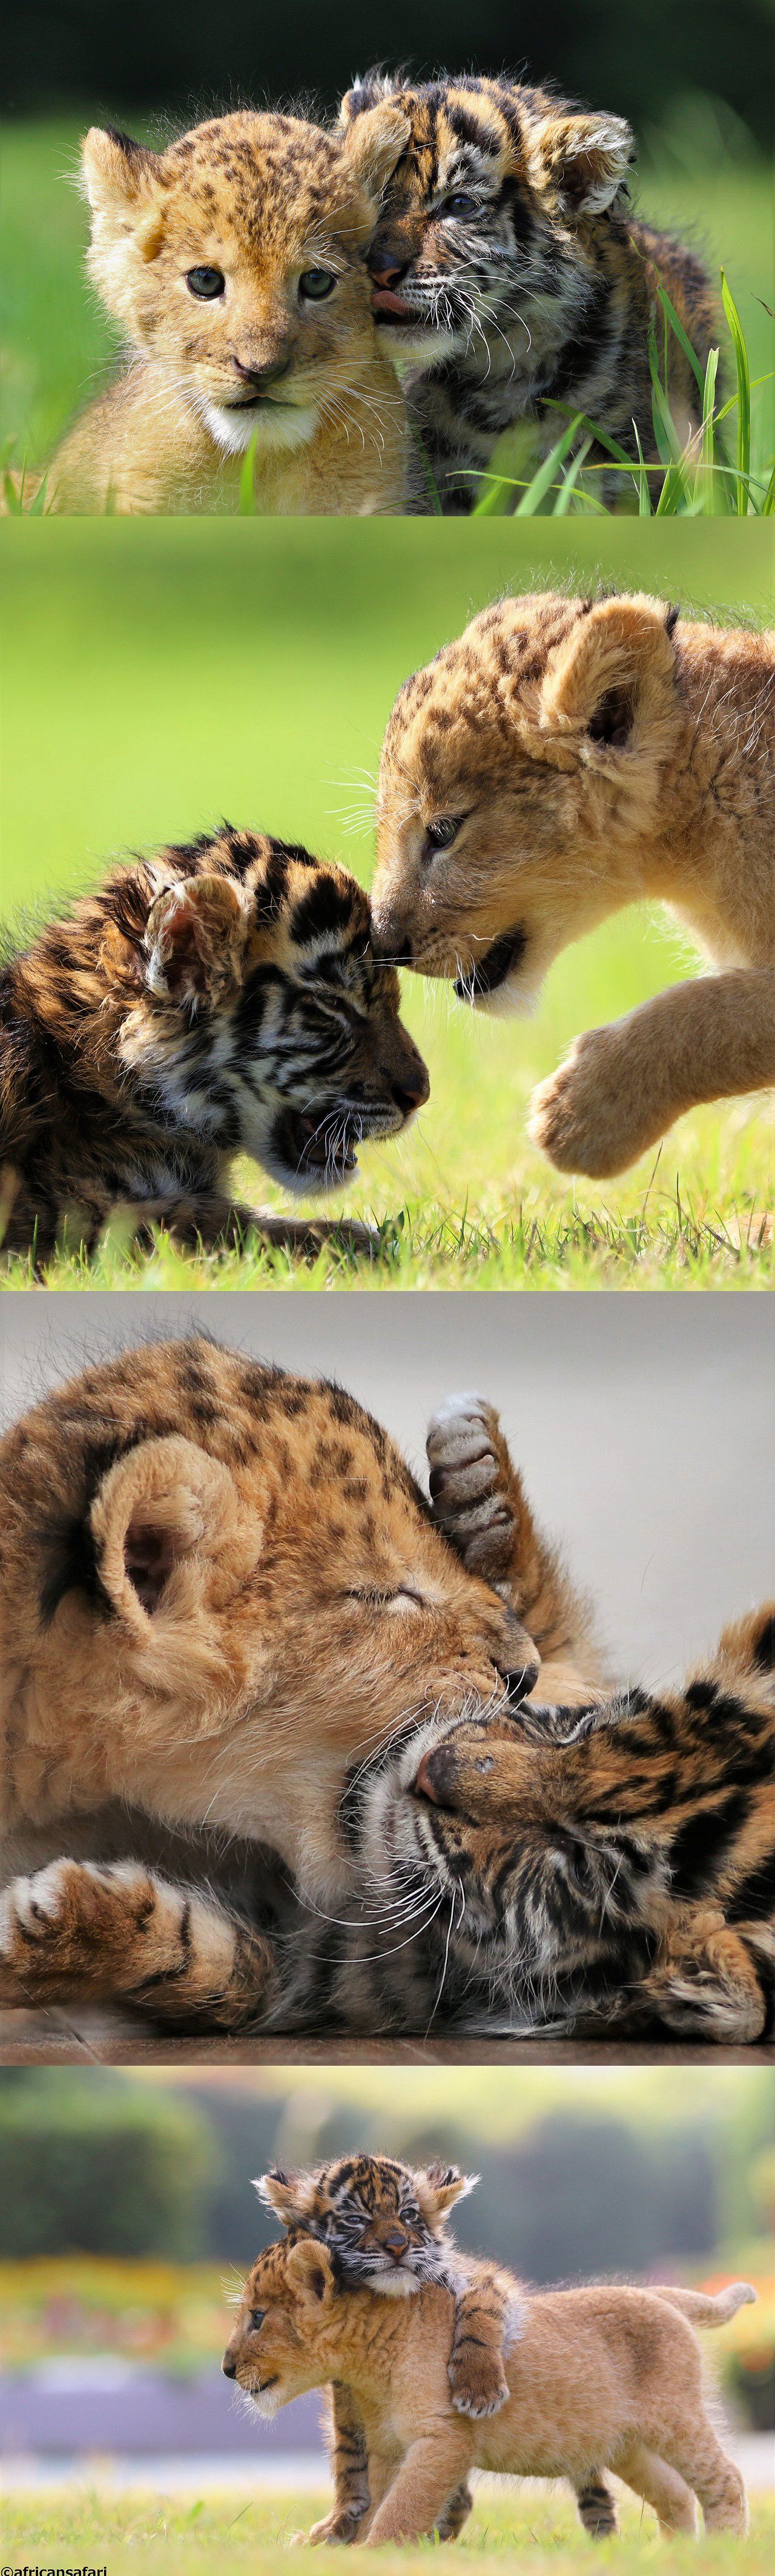 Un bébé tigre et un lionceau amis pour la vie